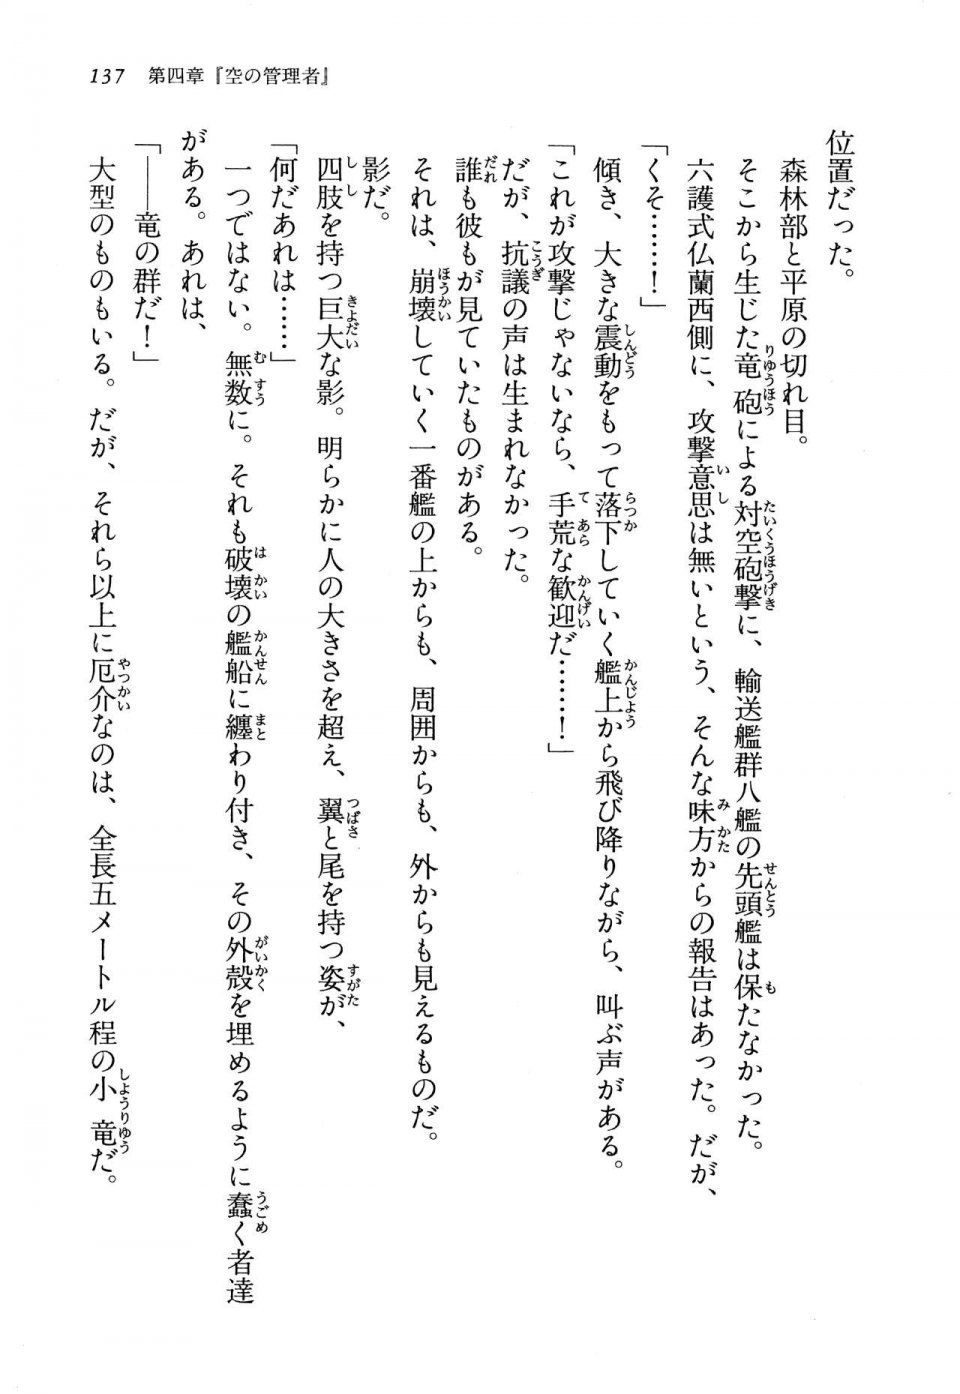 Kyoukai Senjou no Horizon LN Vol 13(6A) - Photo #137